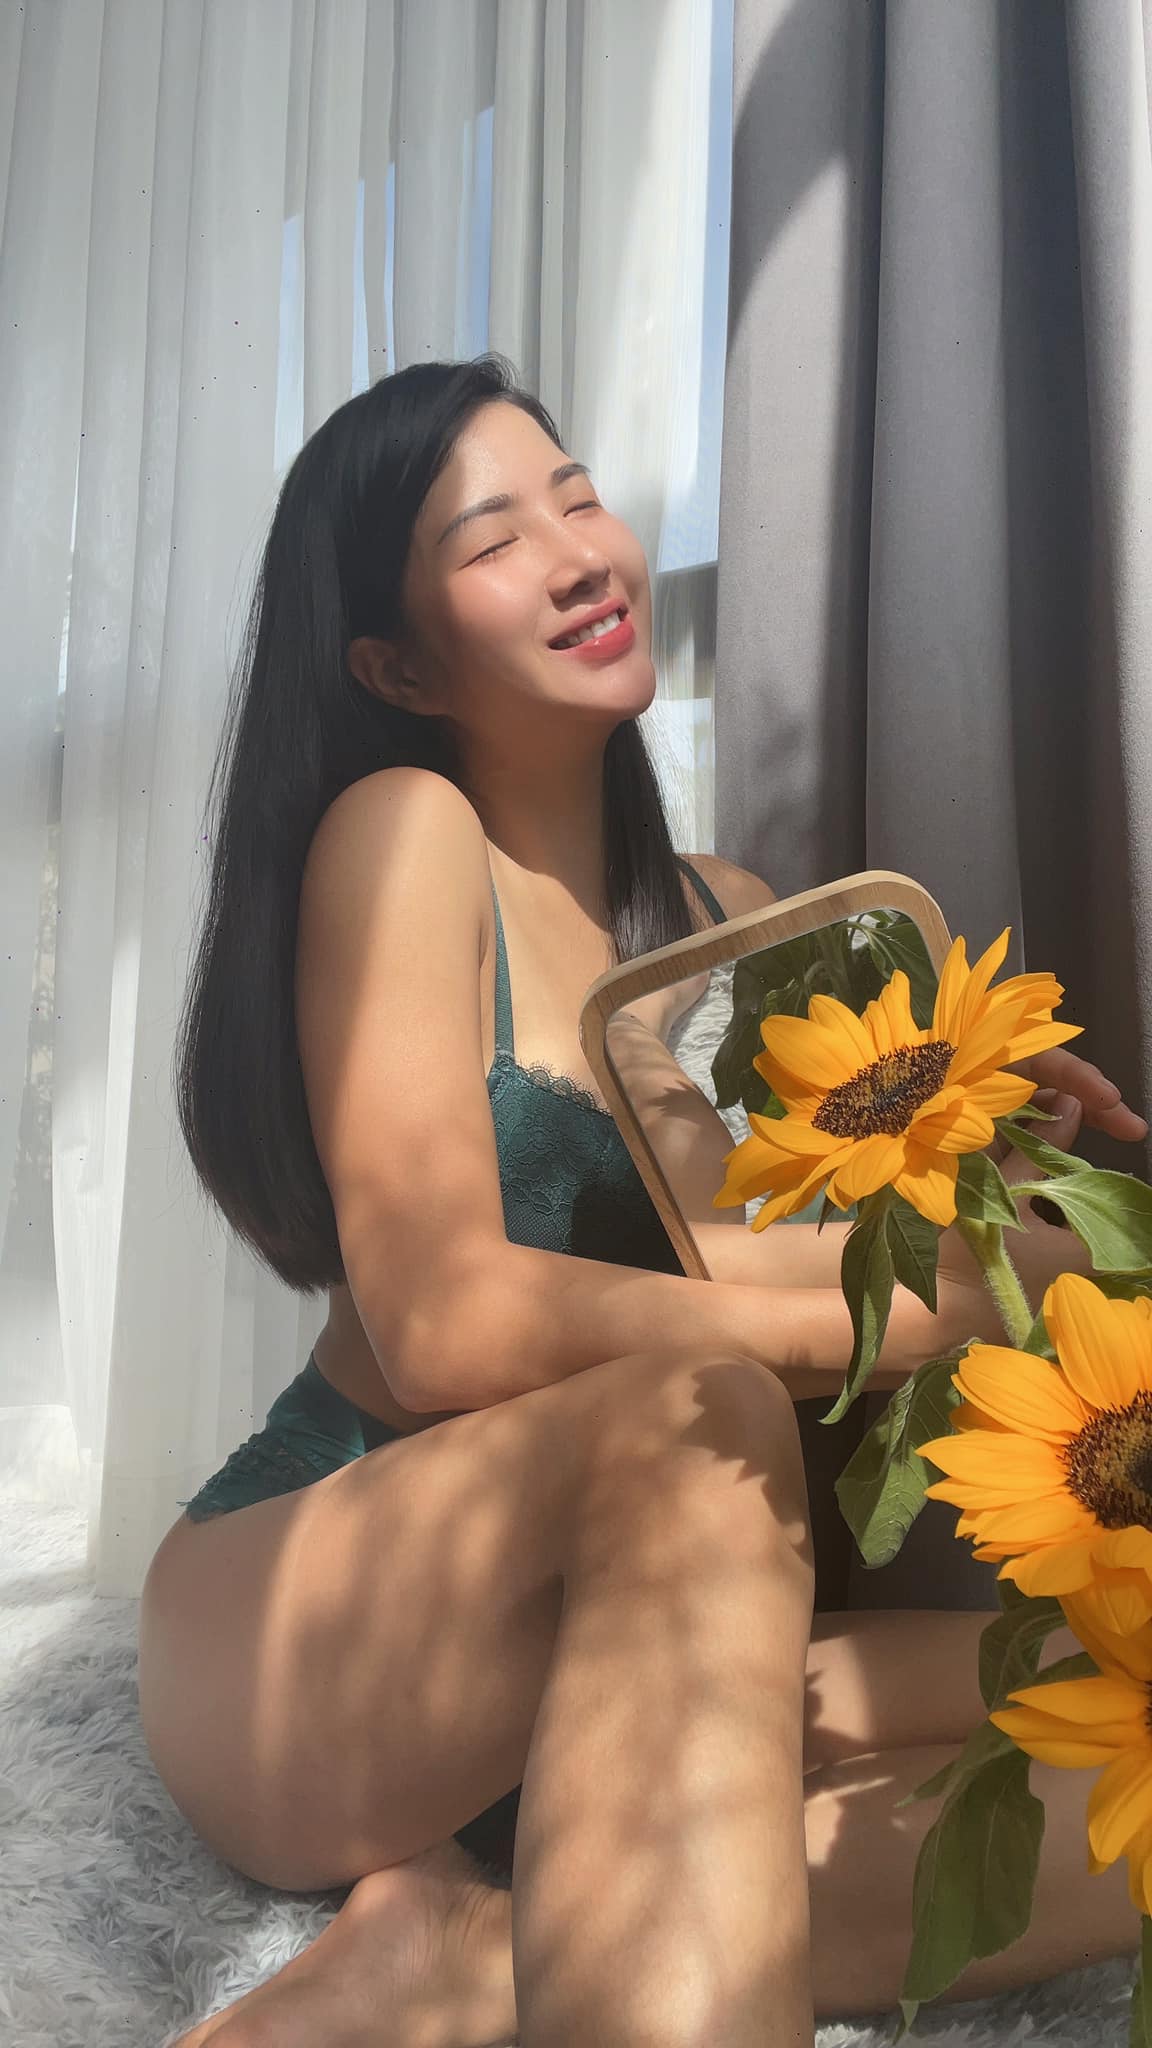 รูปสาวVu Thi Hong Ha เน็ตไอดอลสาวสวยสุดเซ็กซี่ ชาวเวียดนาม ที่เป็นนางฟ้านักปั่น ขวัญใจนักวิ่ง